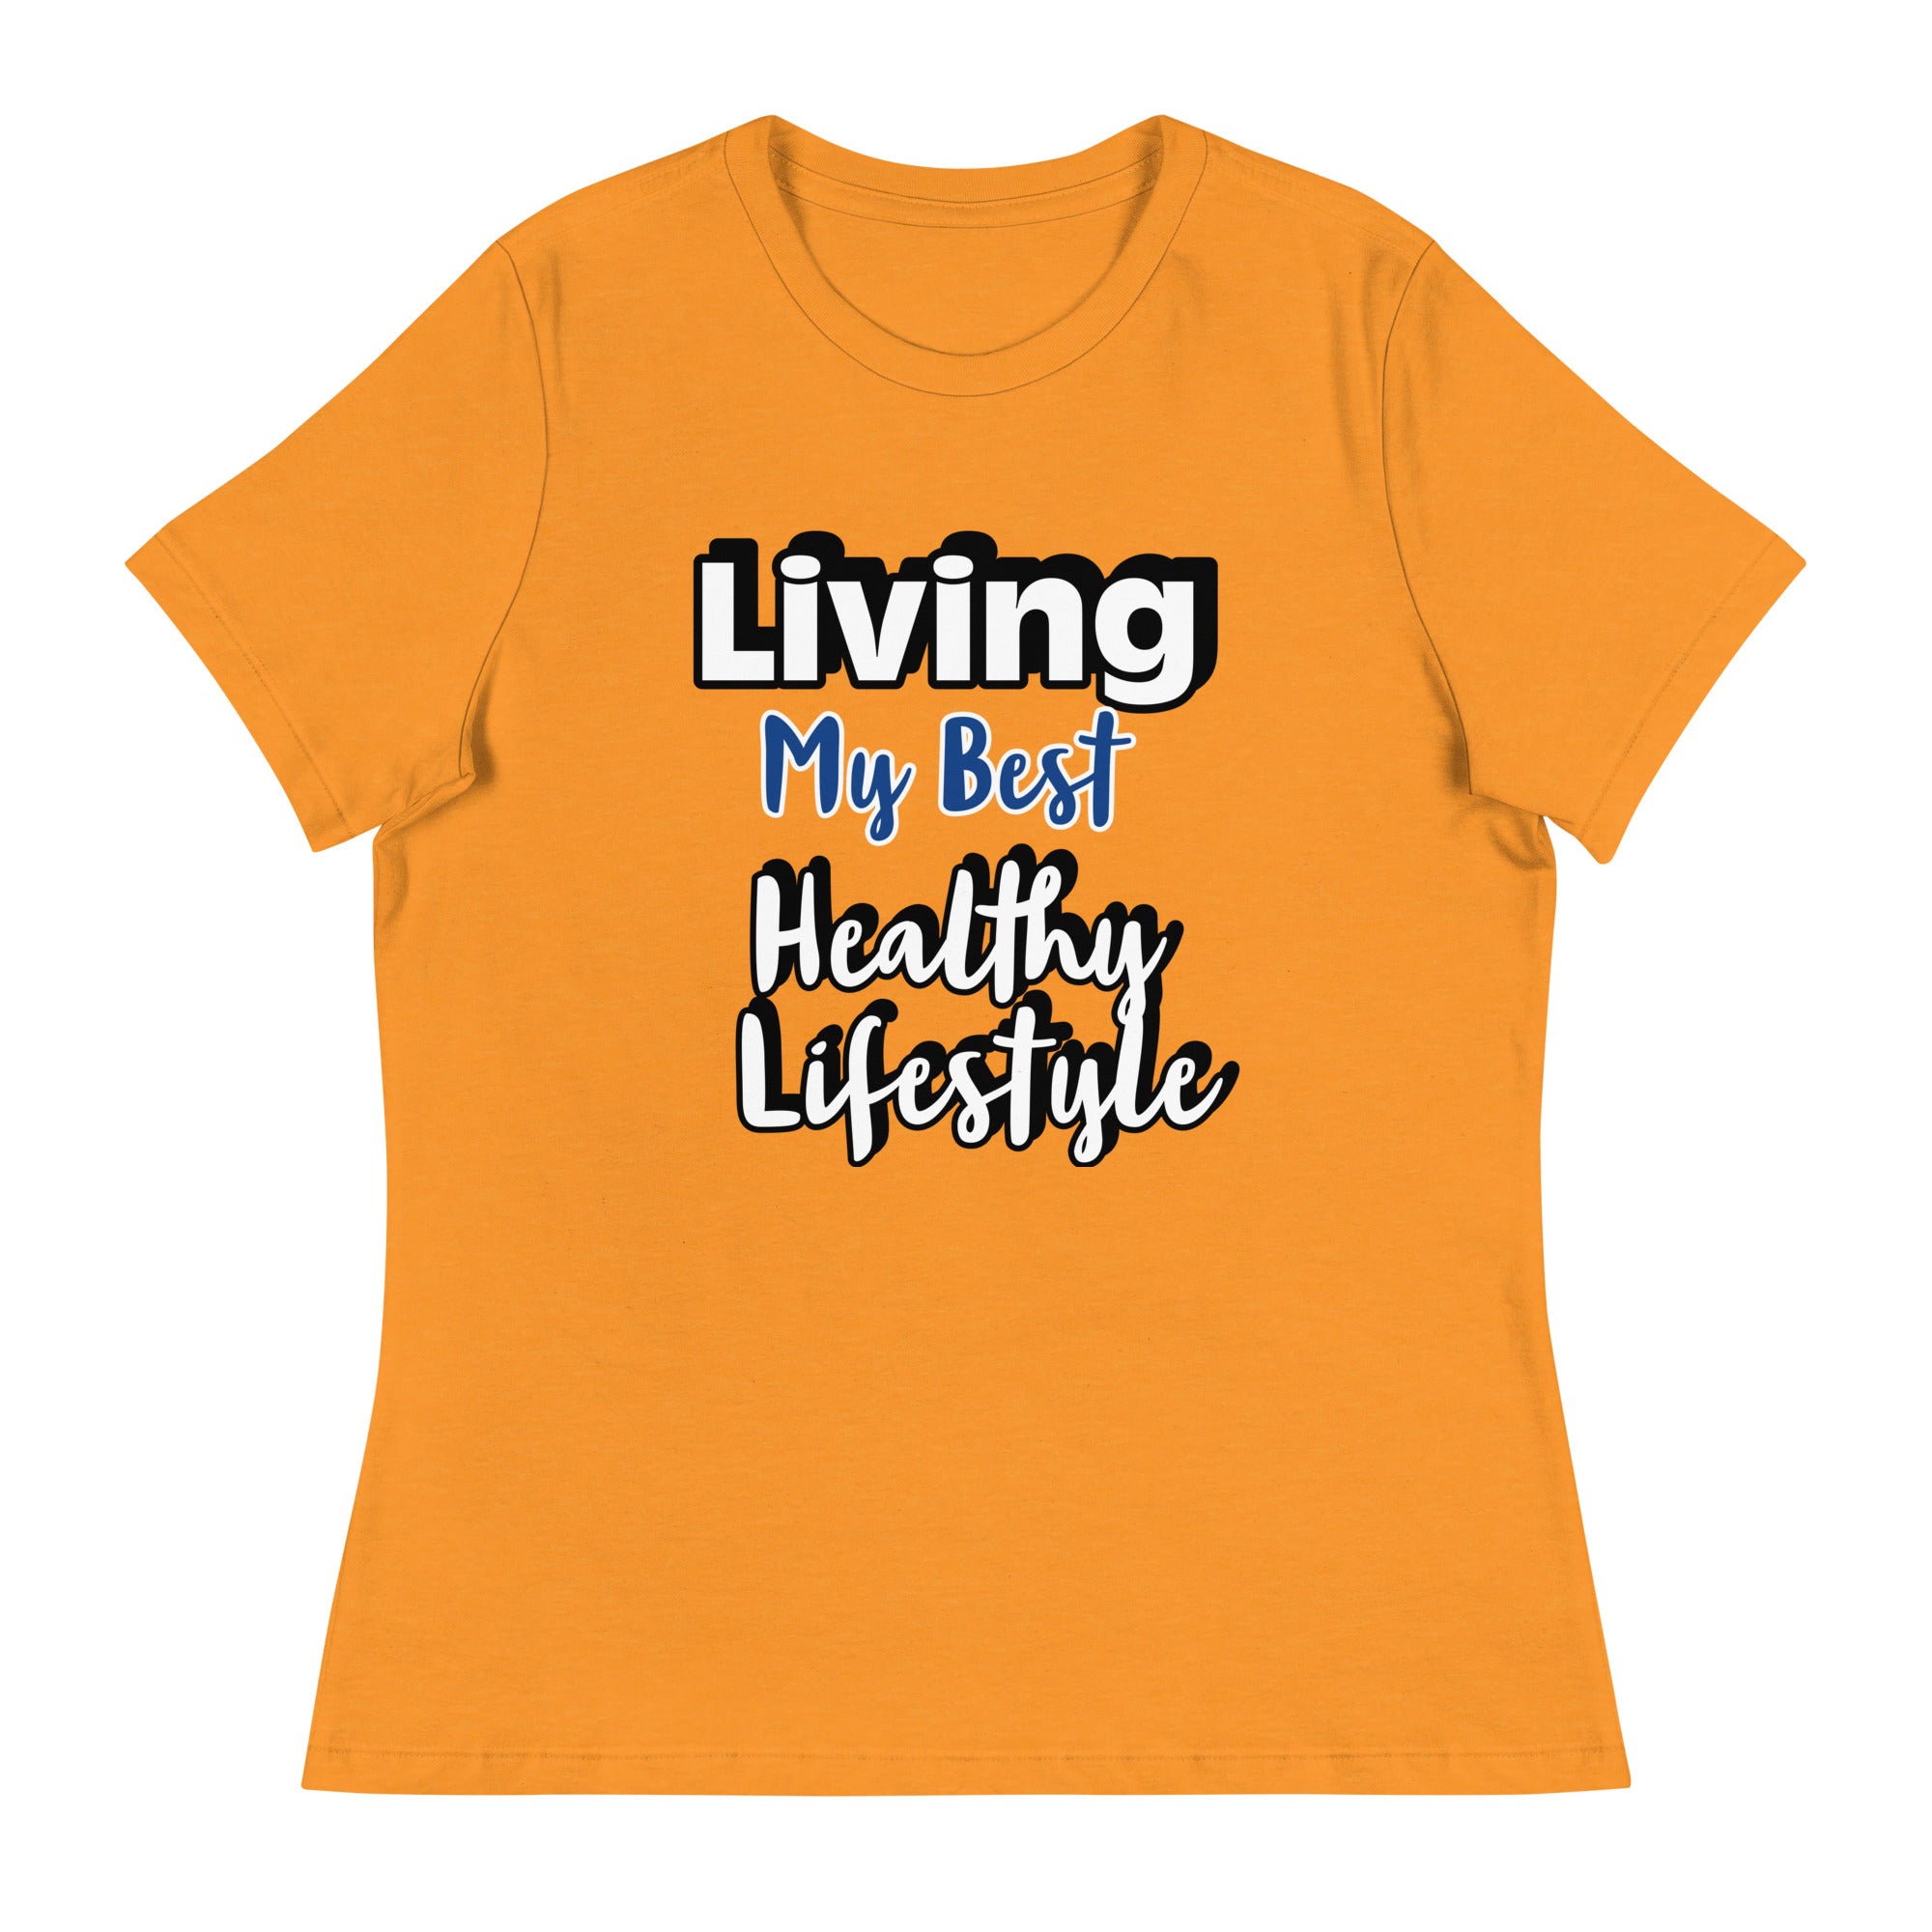 Camiseta de estilo de vida saludable